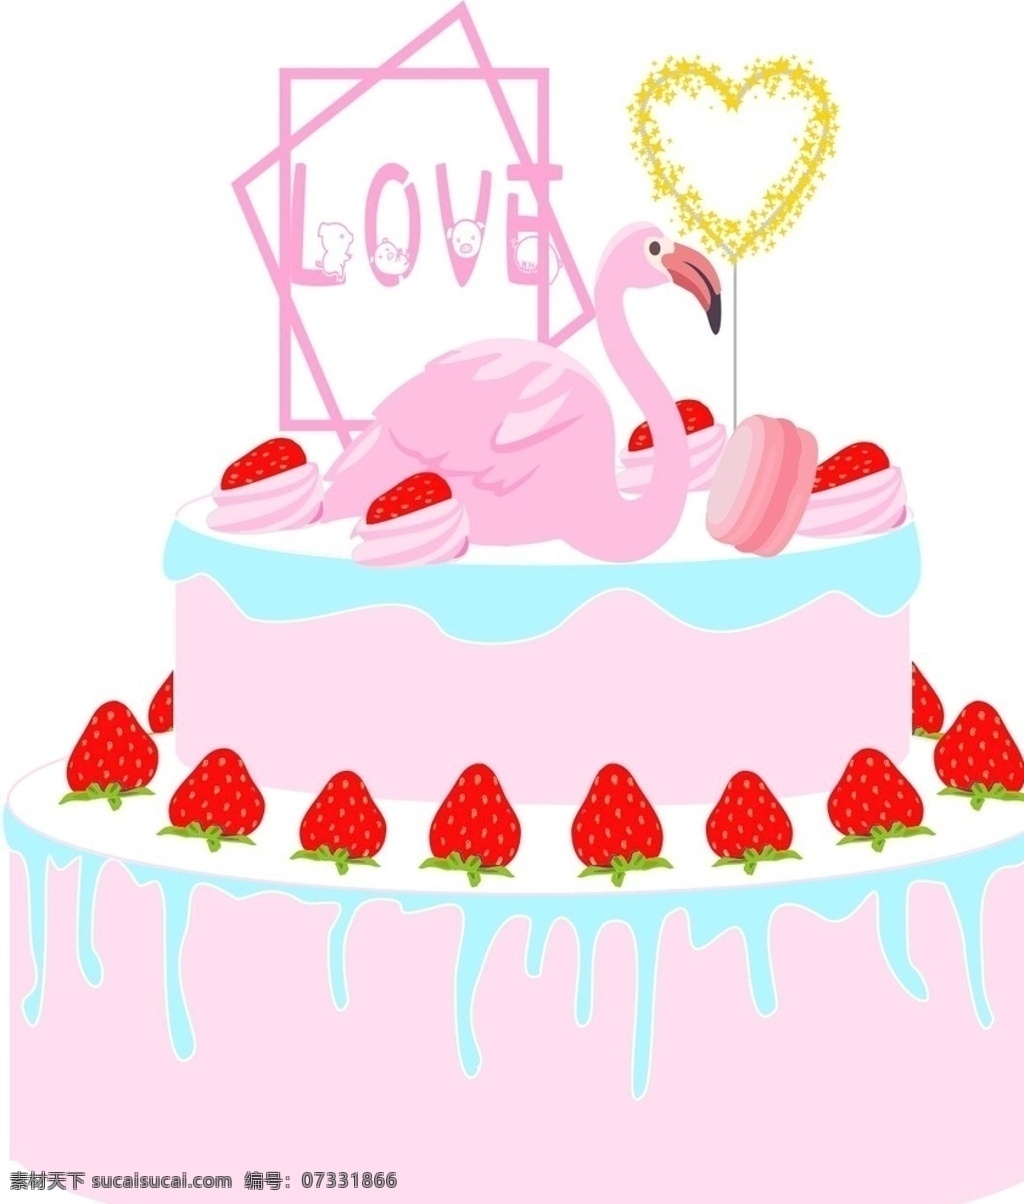 520蛋糕 生日蛋糕 情侣蛋糕 马卡龙 草莓蛋糕 马卡龙蛋糕 少女心 少女粉 草莓 底纹边框 其他素材